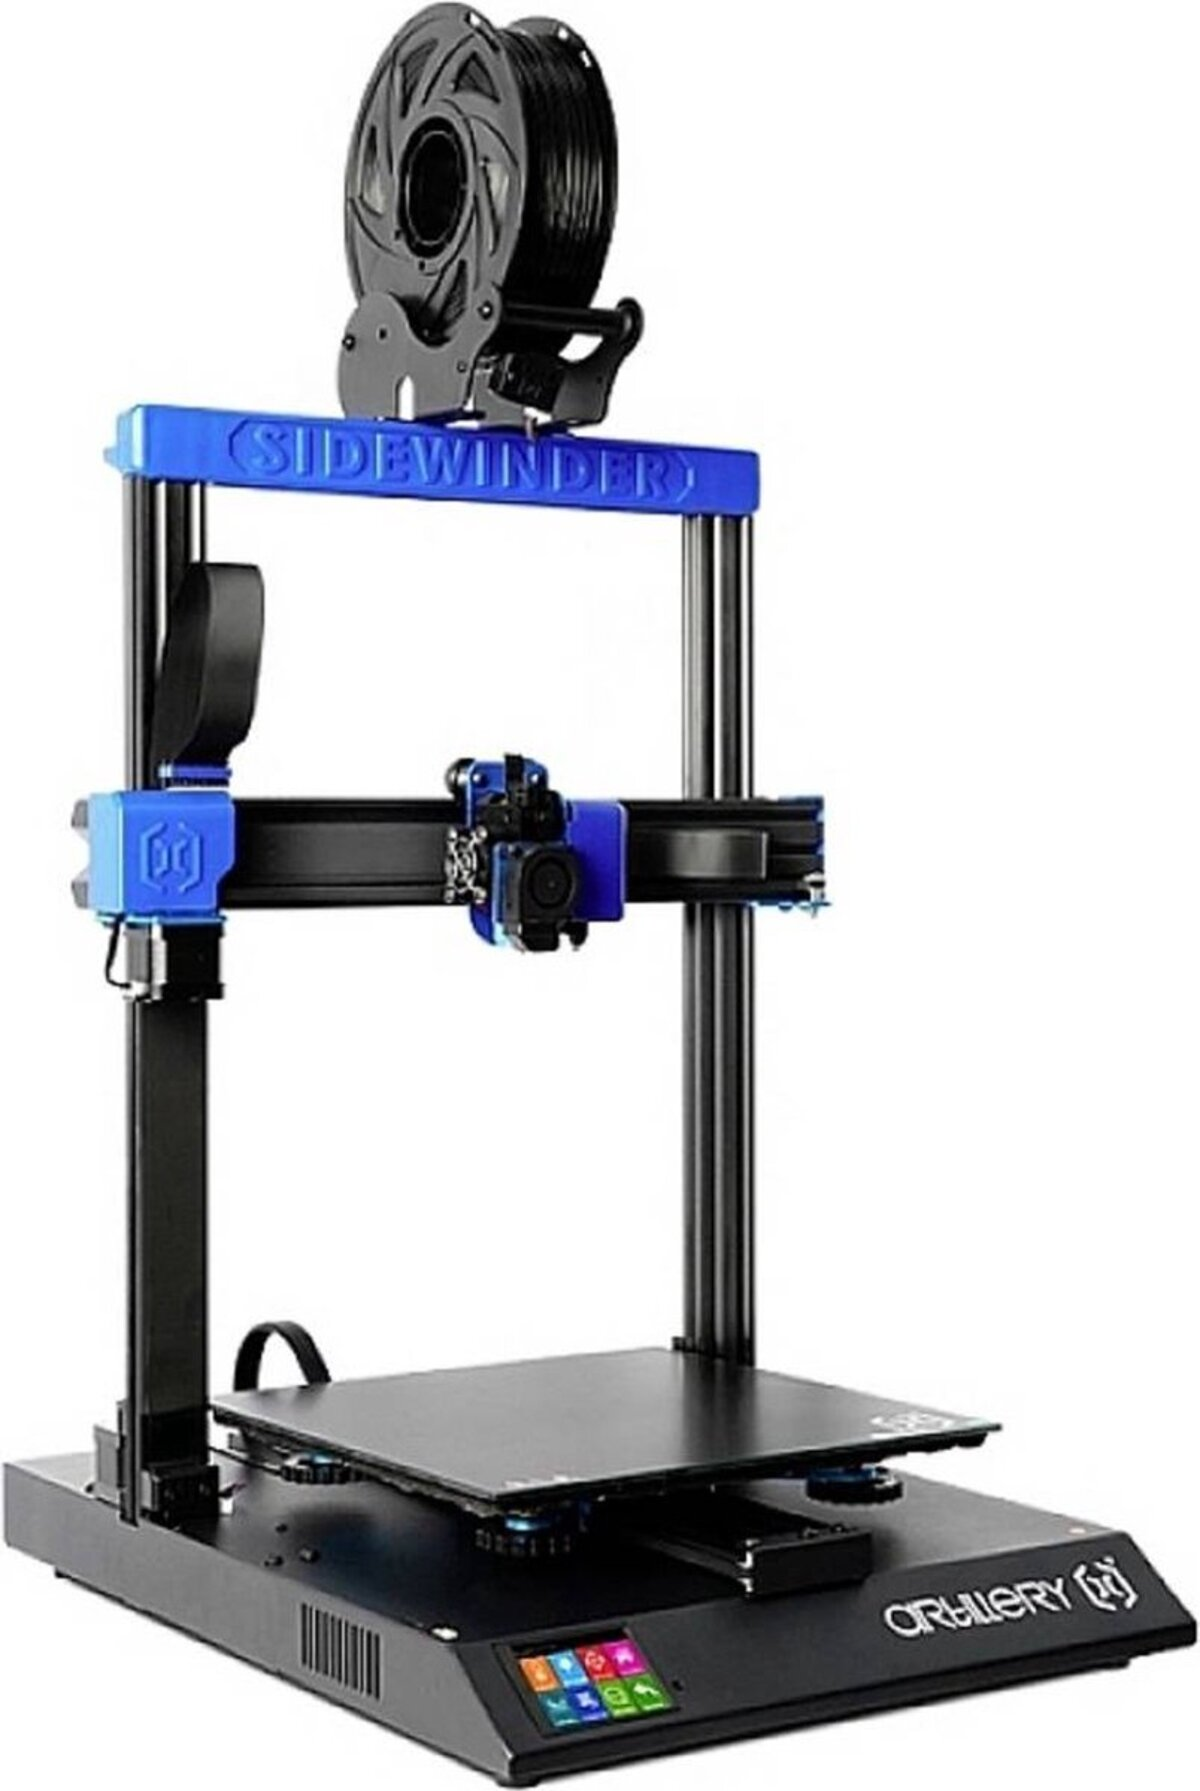 ARTILLERY Sidewinder X2 300x300x400mm 3D Extruder Drucker Printer Auto-Level FDM Direct 3D Drive